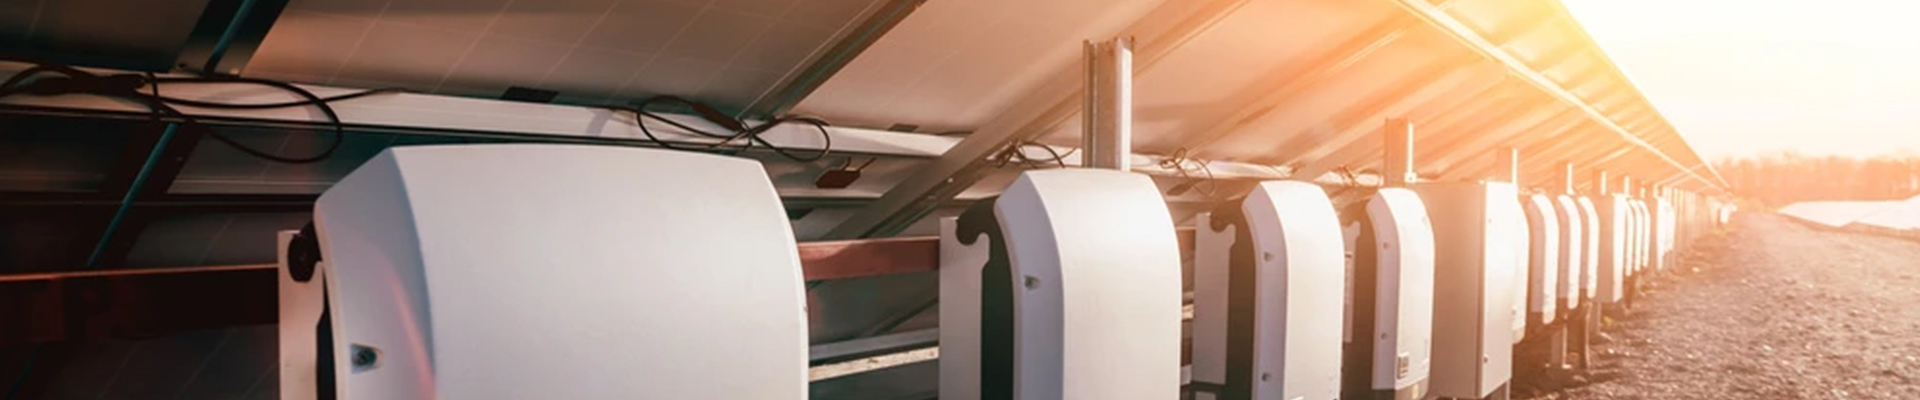 3 Phase Solar Inverter In Garage